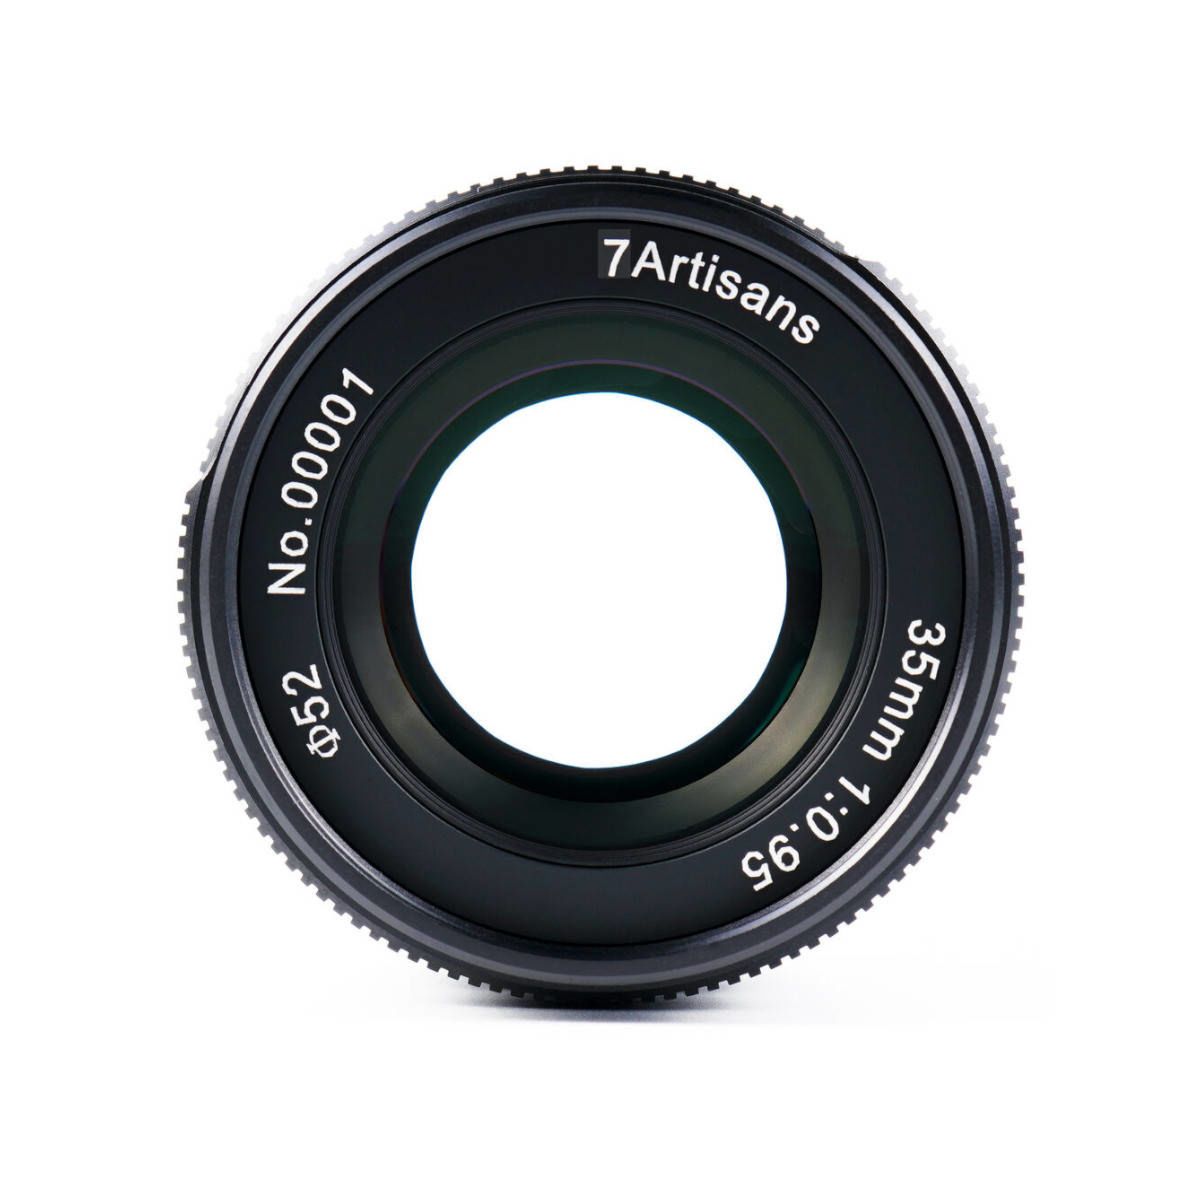 Nikon Z के लिए 7artisans 35mm F 0.95 लेंस